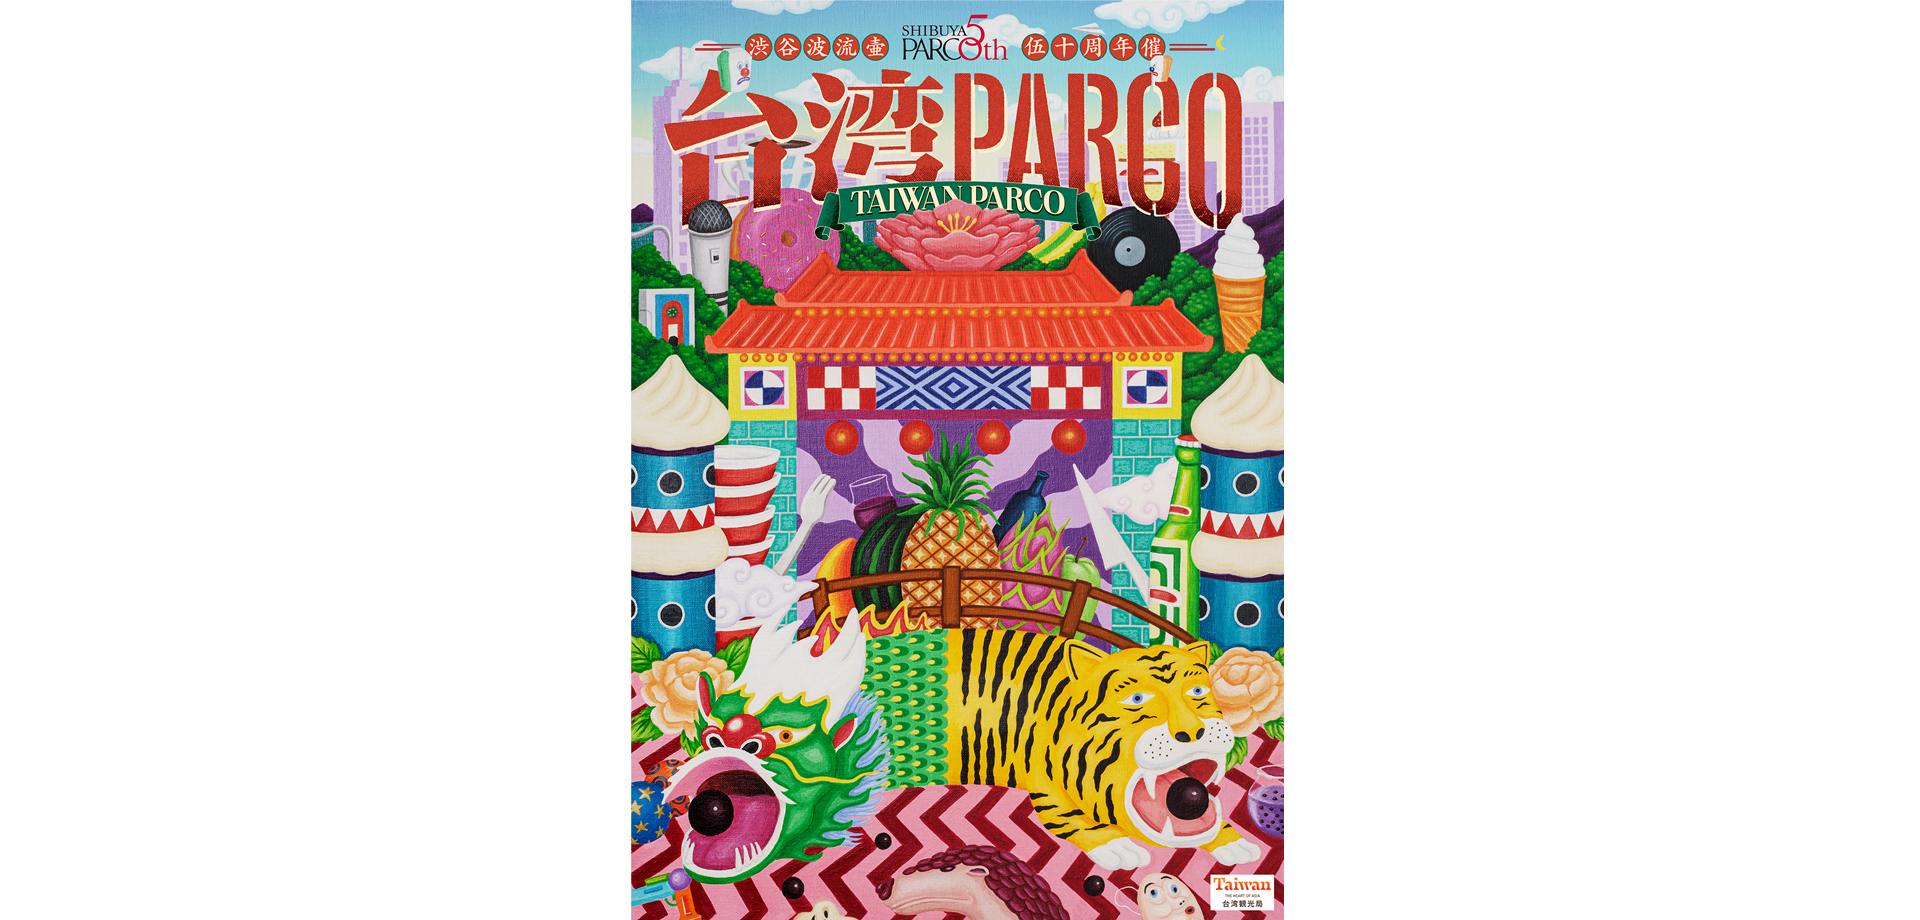 渋谷PARCO50周年企画 「台湾PARCO」